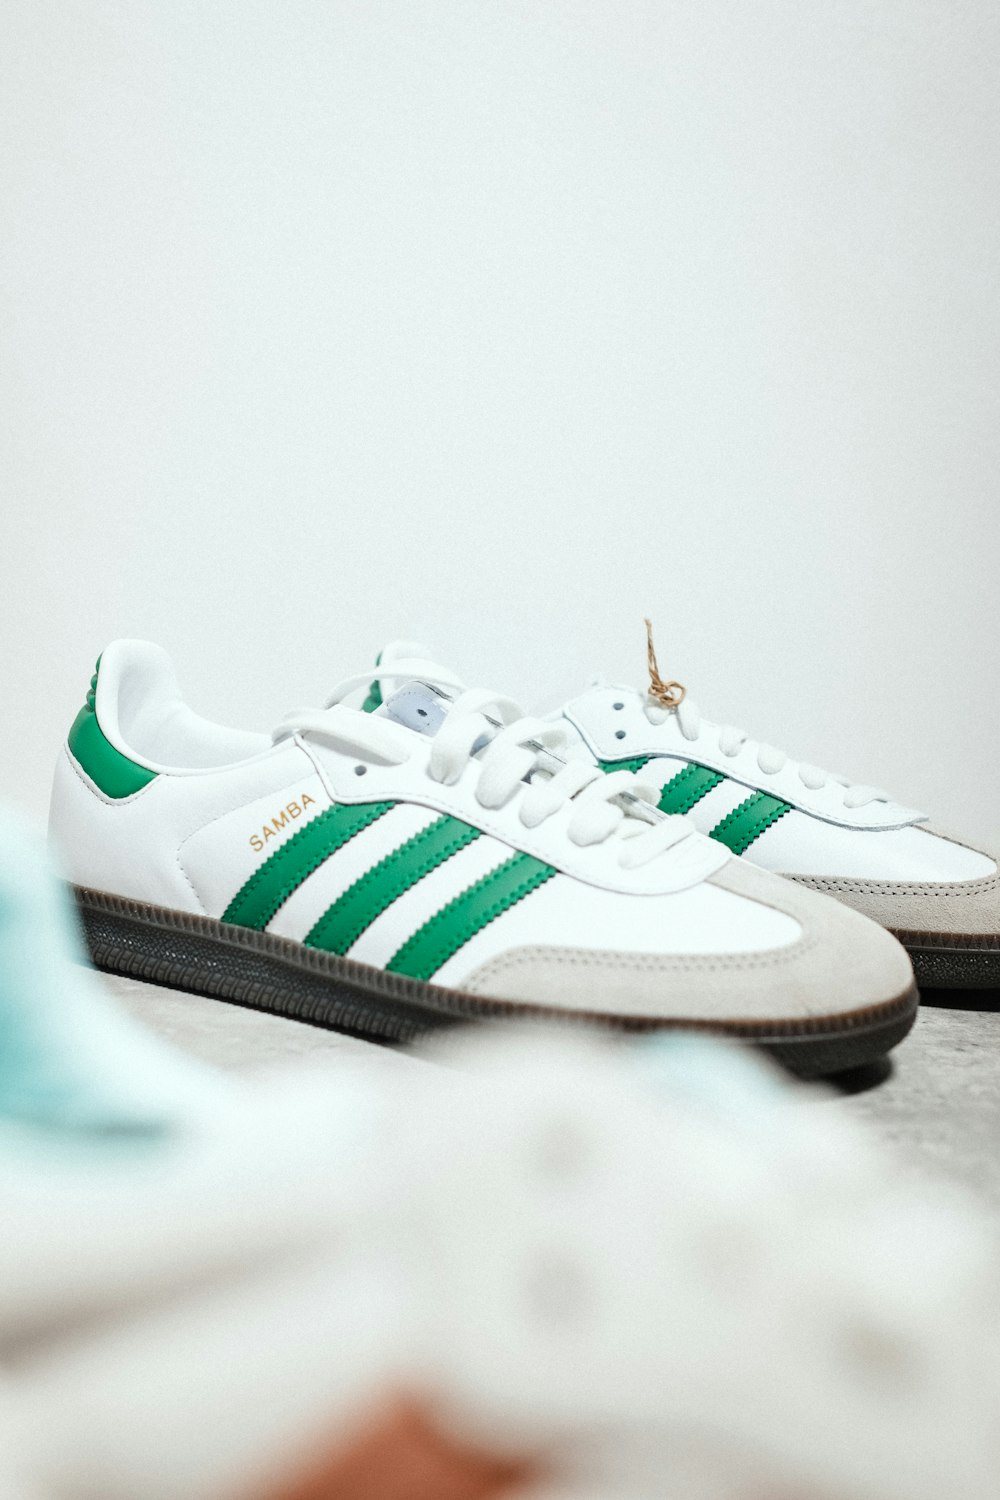 Un paio di sneakers adidas bianche e verdi